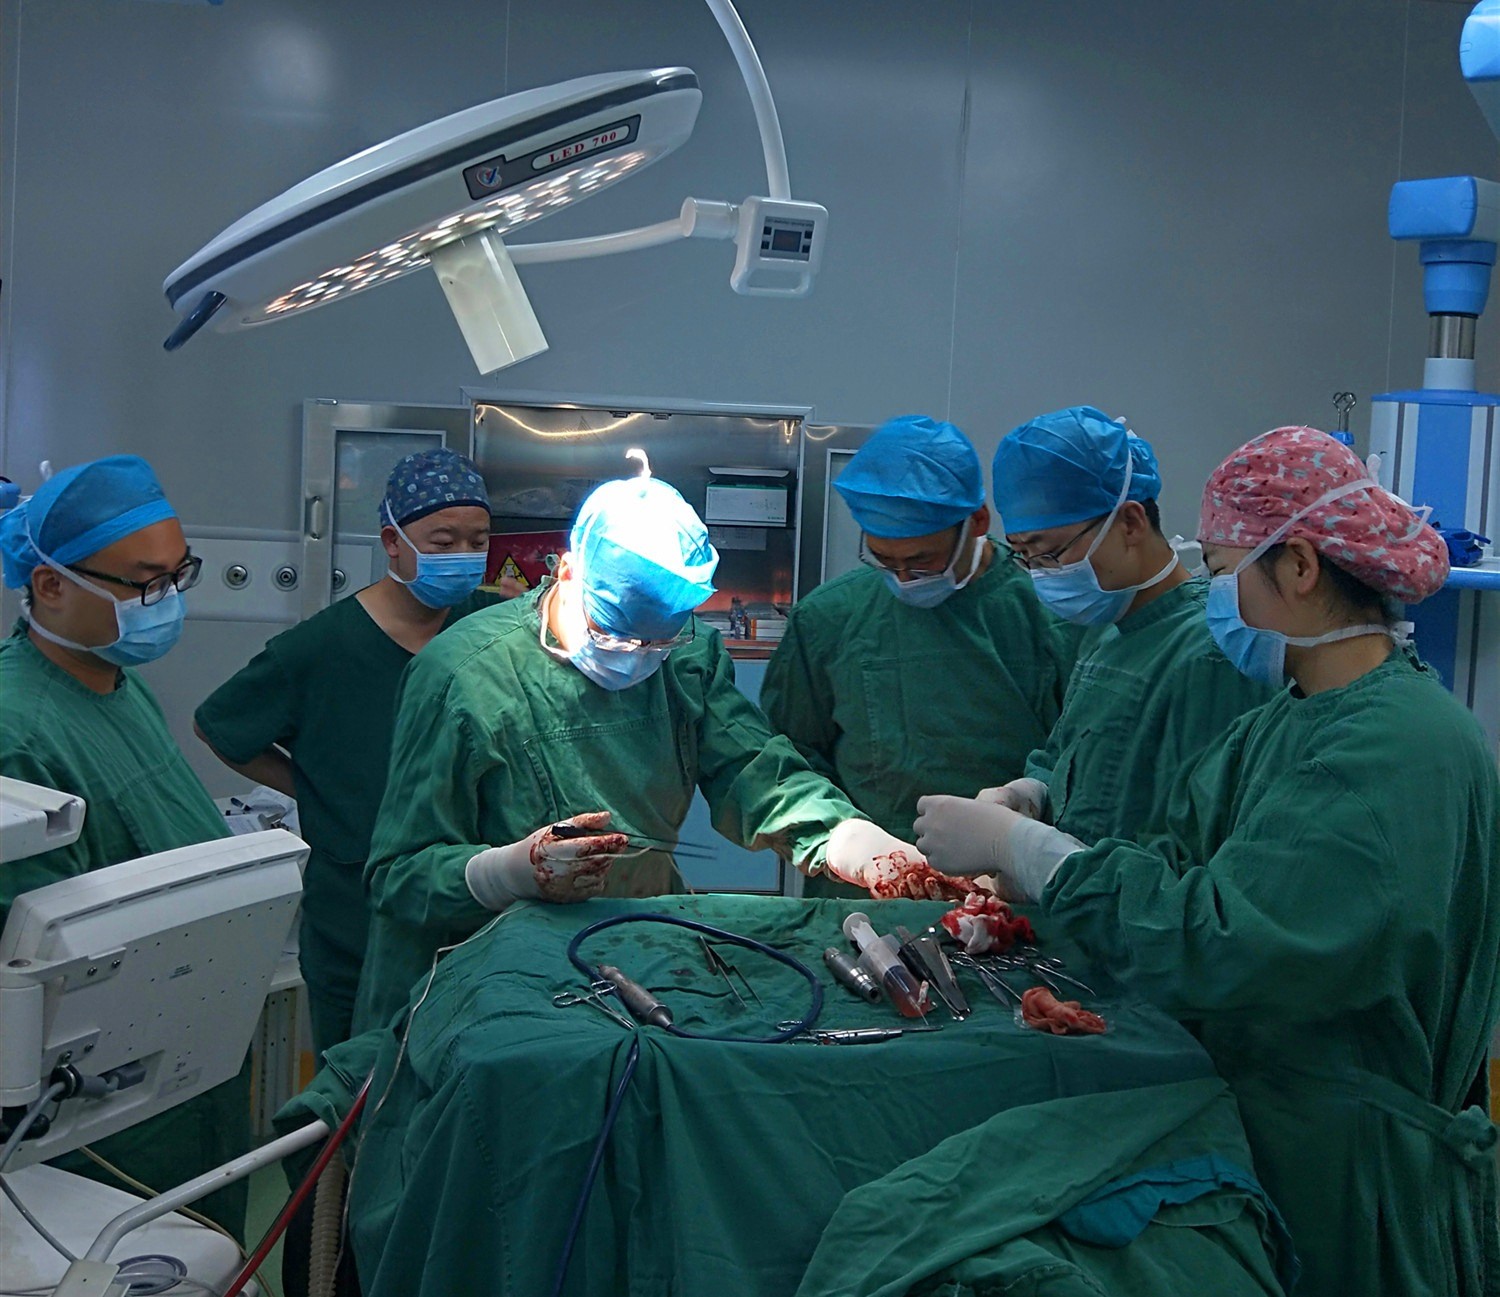 清水县人民医院外三科行开颅血肿清除手术成功救治一名急性重型颅脑